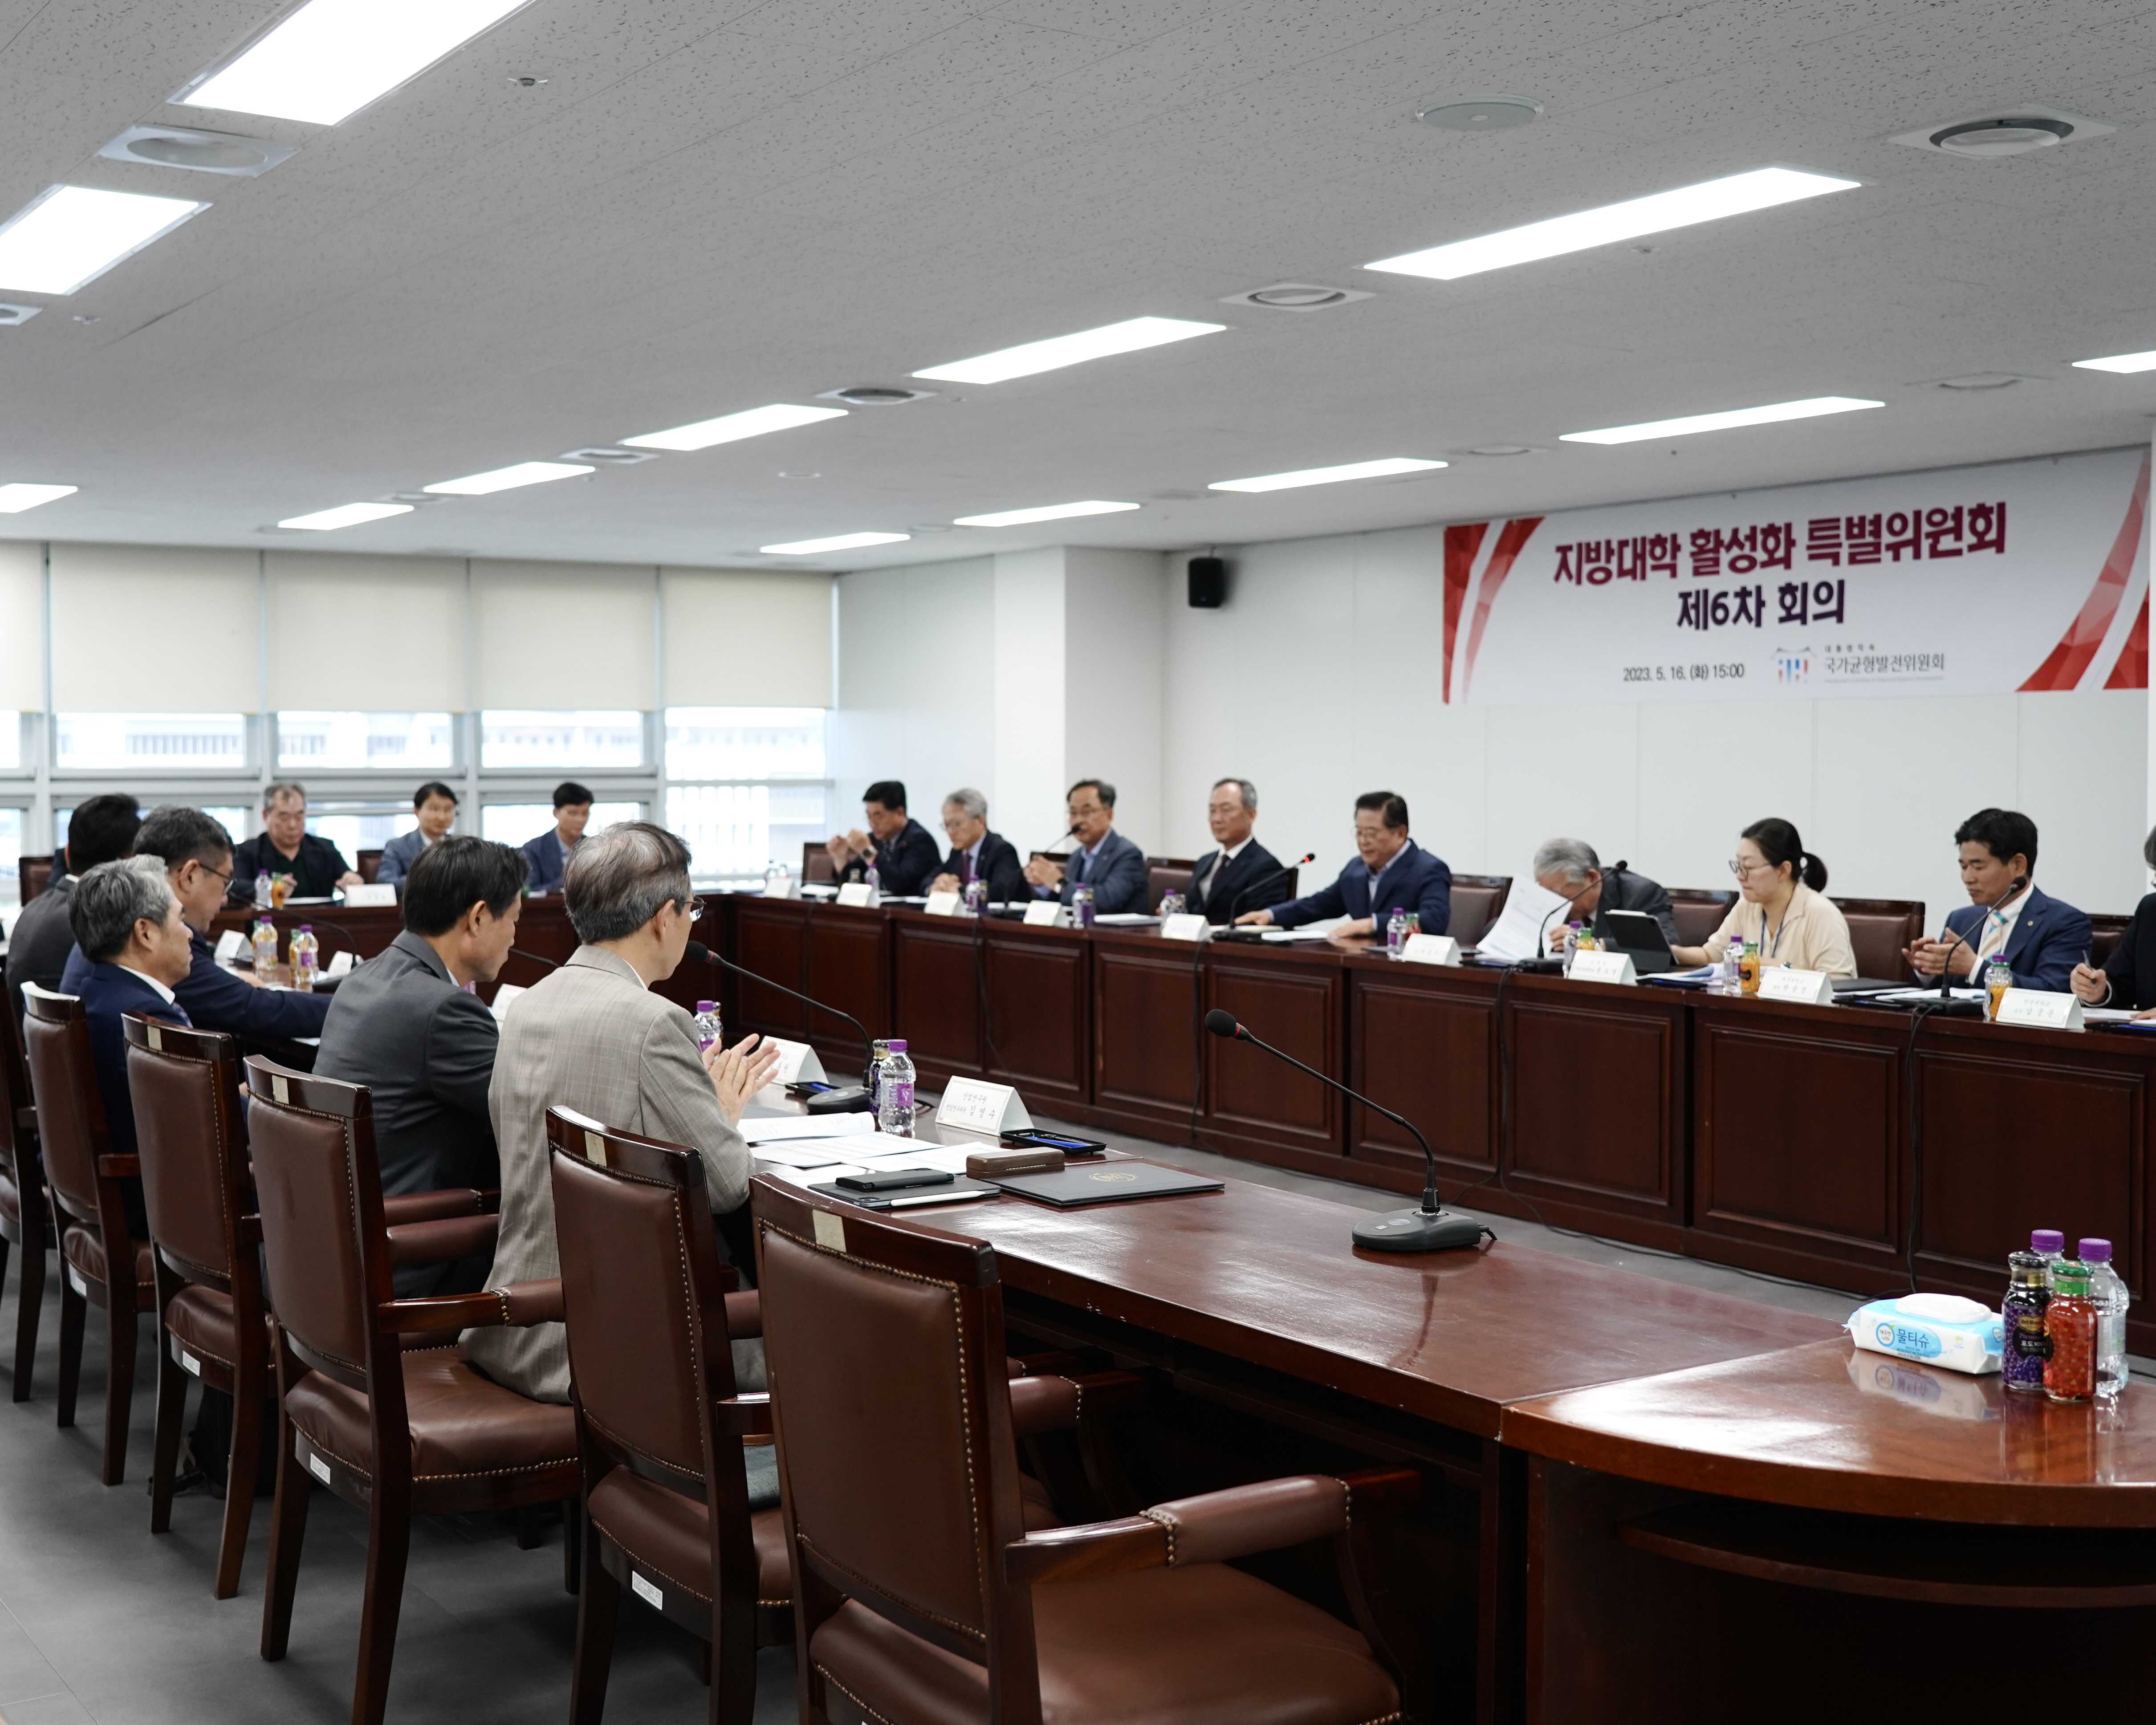 <사진1> 국가균형발전위원회는 5월 16일 「제6차 지방대학 활성화 특별위원회」를 개최하였다. (1) 